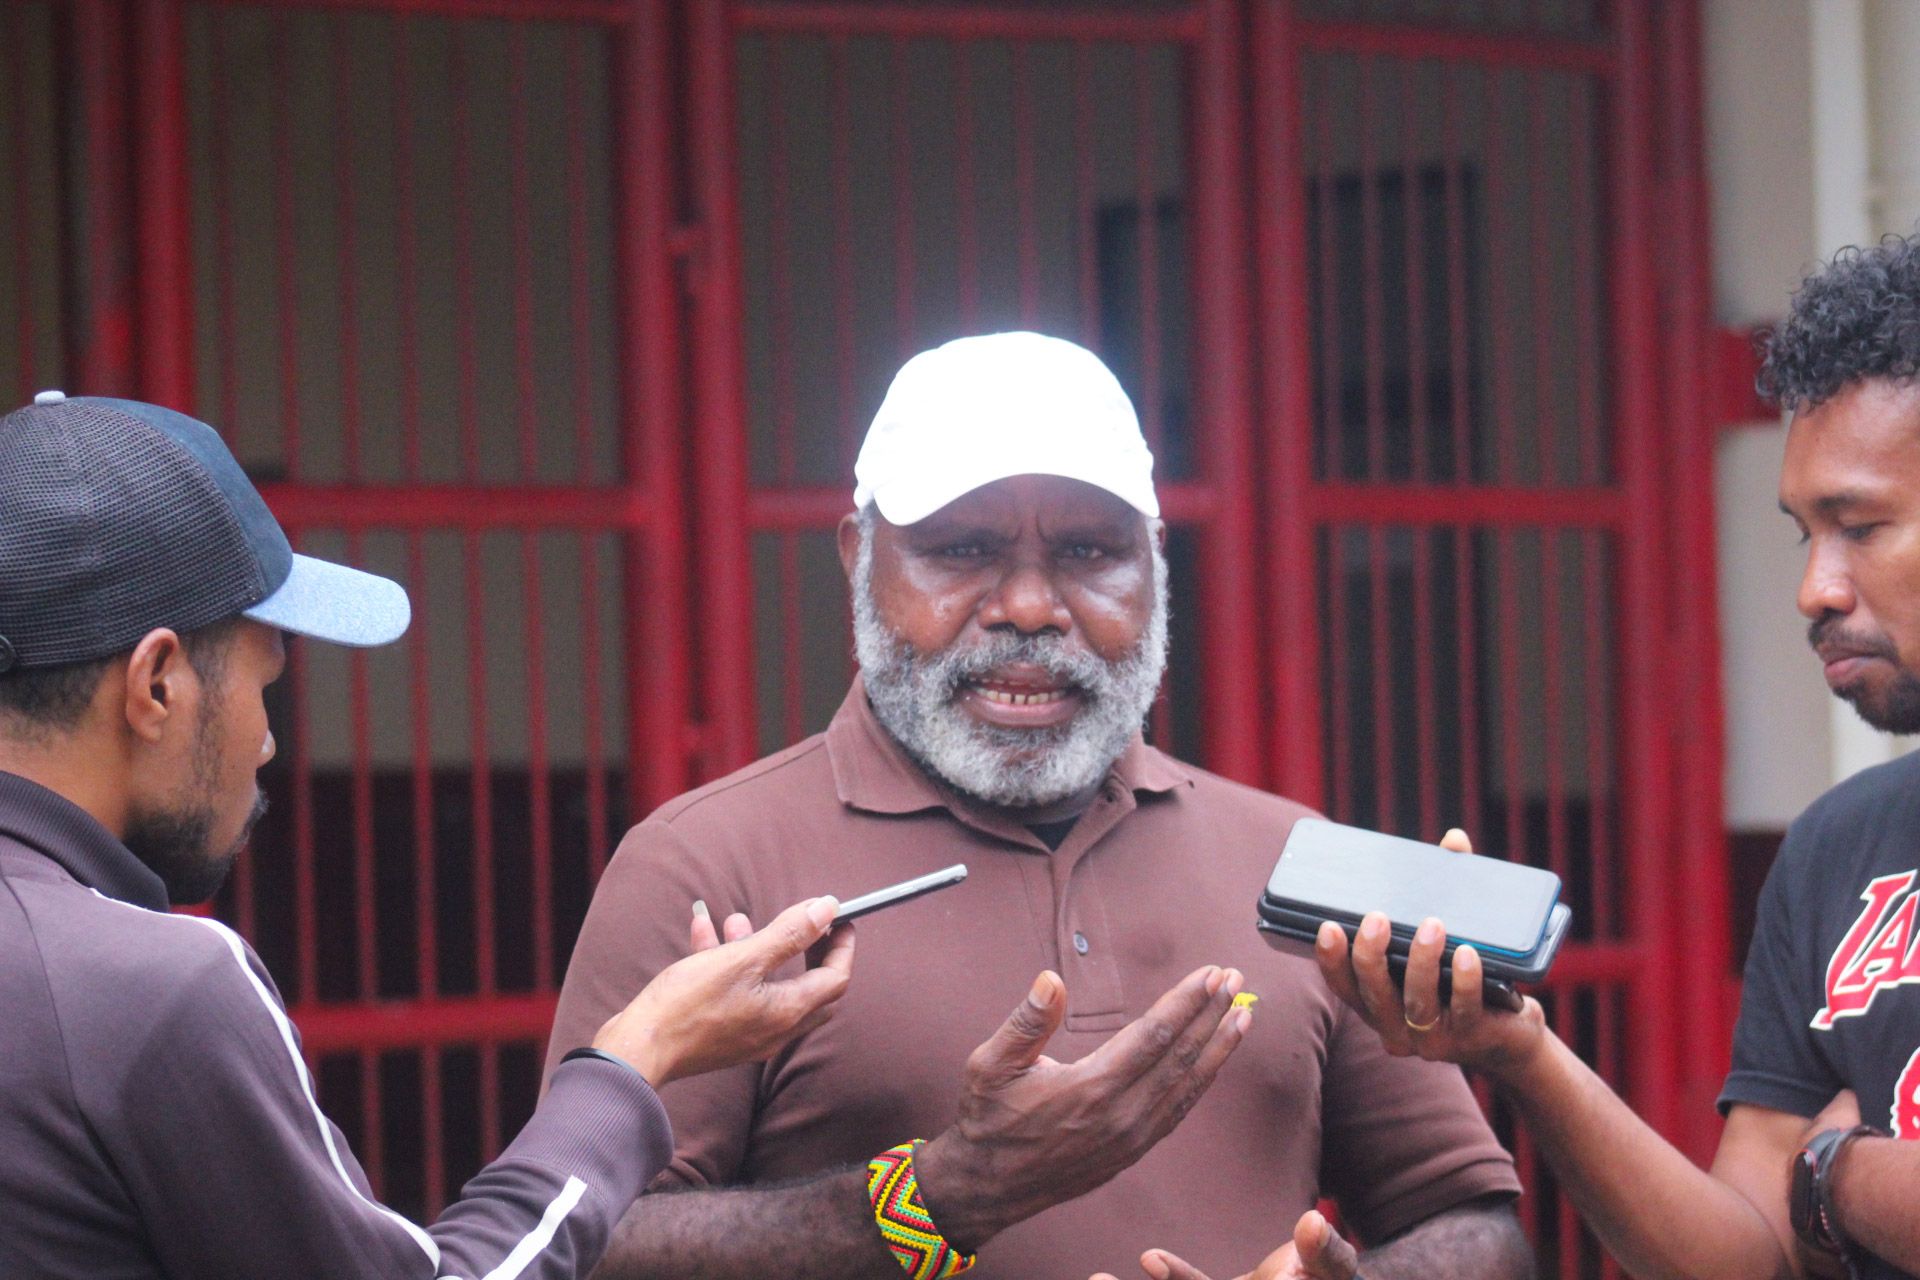 Ketua Panitia Piala Pertiwi Cup 2022 zona Papua yang juga ditunjuk sebagai Ketua Asosiasi Sepakbola Wanita Indonesia (ASBWI), Usman G Wanimbo ketika ditemui awak media di Stadion Mandala, Kota Jayapura, Papua, Sabtu 04 Maret 2023 dok (PORTAL PAPUA)